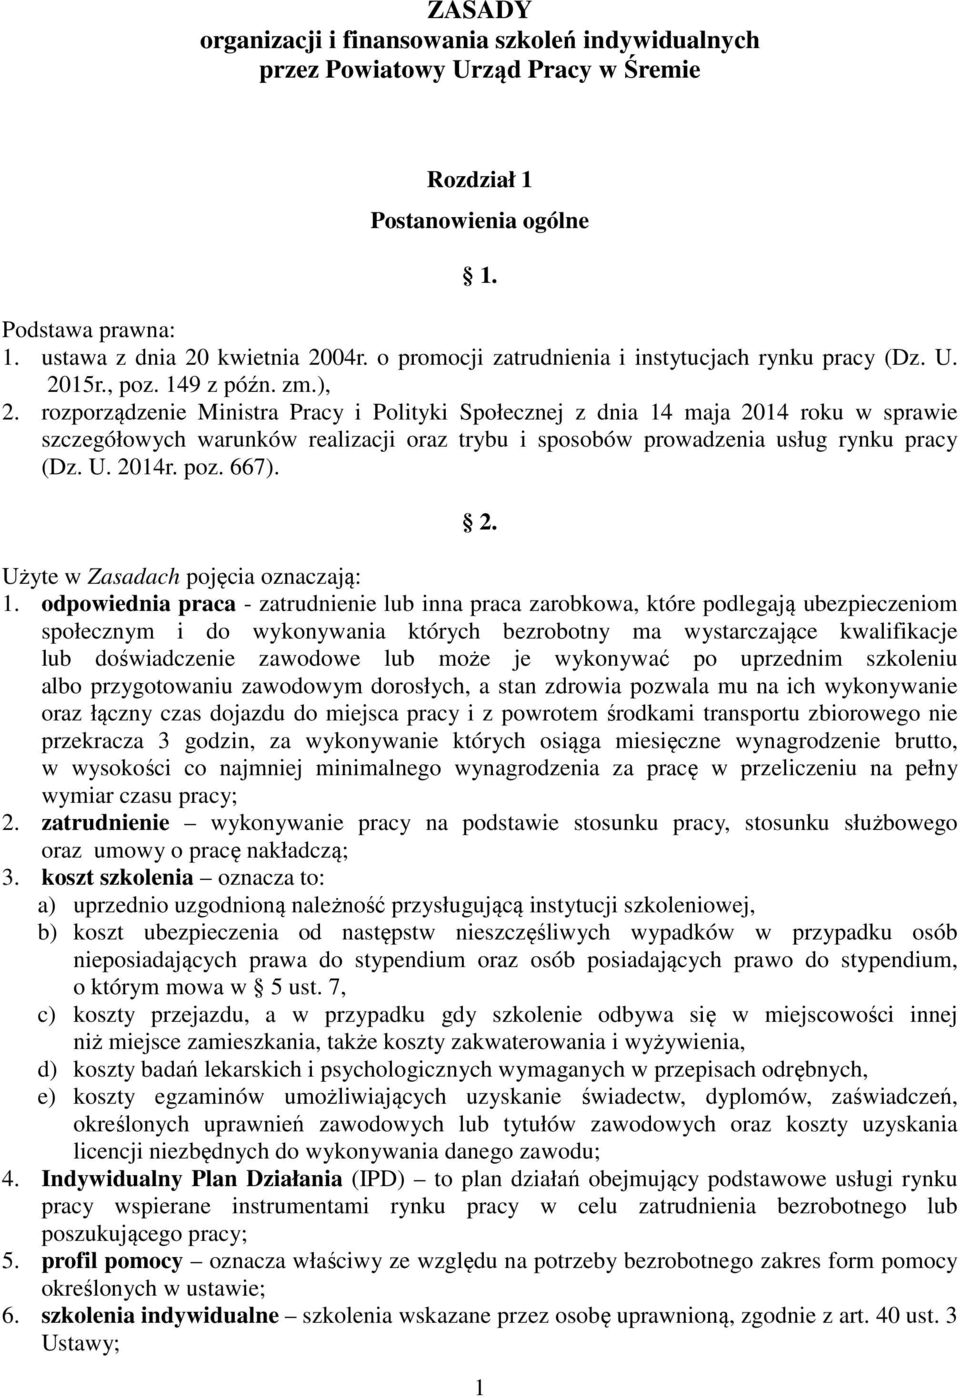 rozporządzenie Ministra Pracy i Polityki Społecznej z dnia 14 maja 2014 roku w sprawie szczegółowych warunków realizacji oraz trybu i sposobów prowadzenia usług rynku pracy (Dz. U. 2014r. poz. 667).